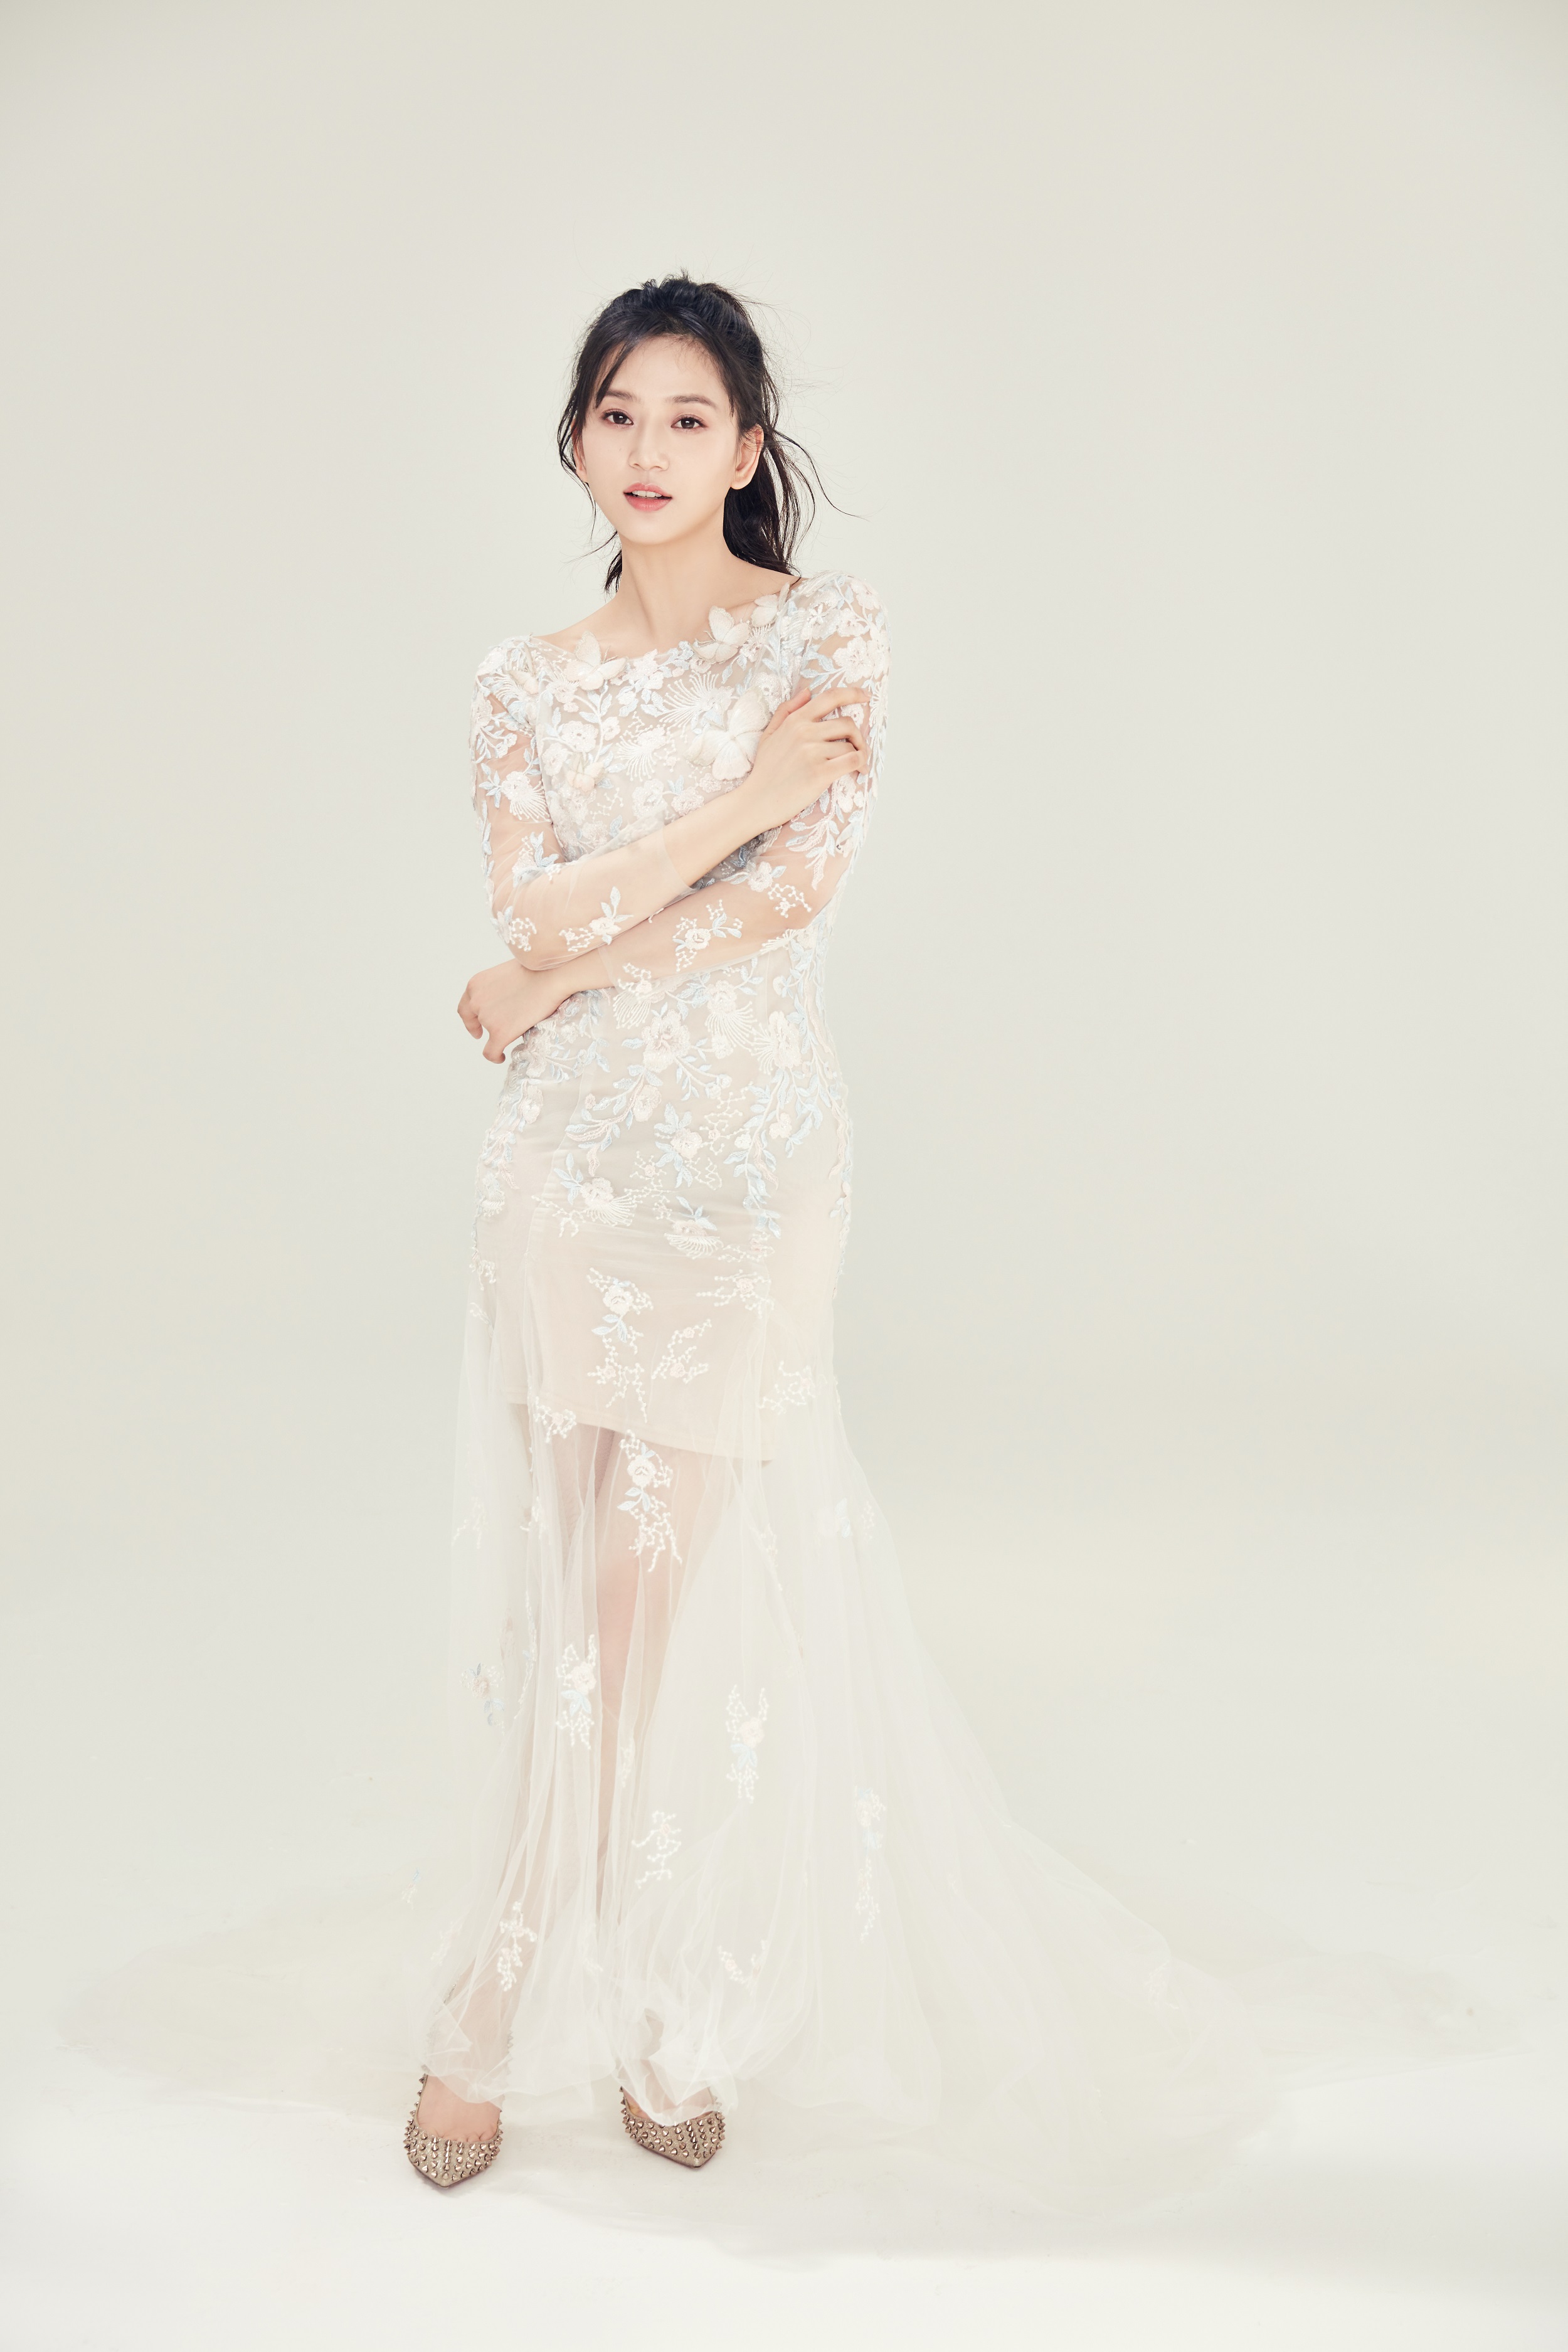 网红飘纱_近期主题 | 作品展示 | 深圳皇室米兰婚纱摄影集团